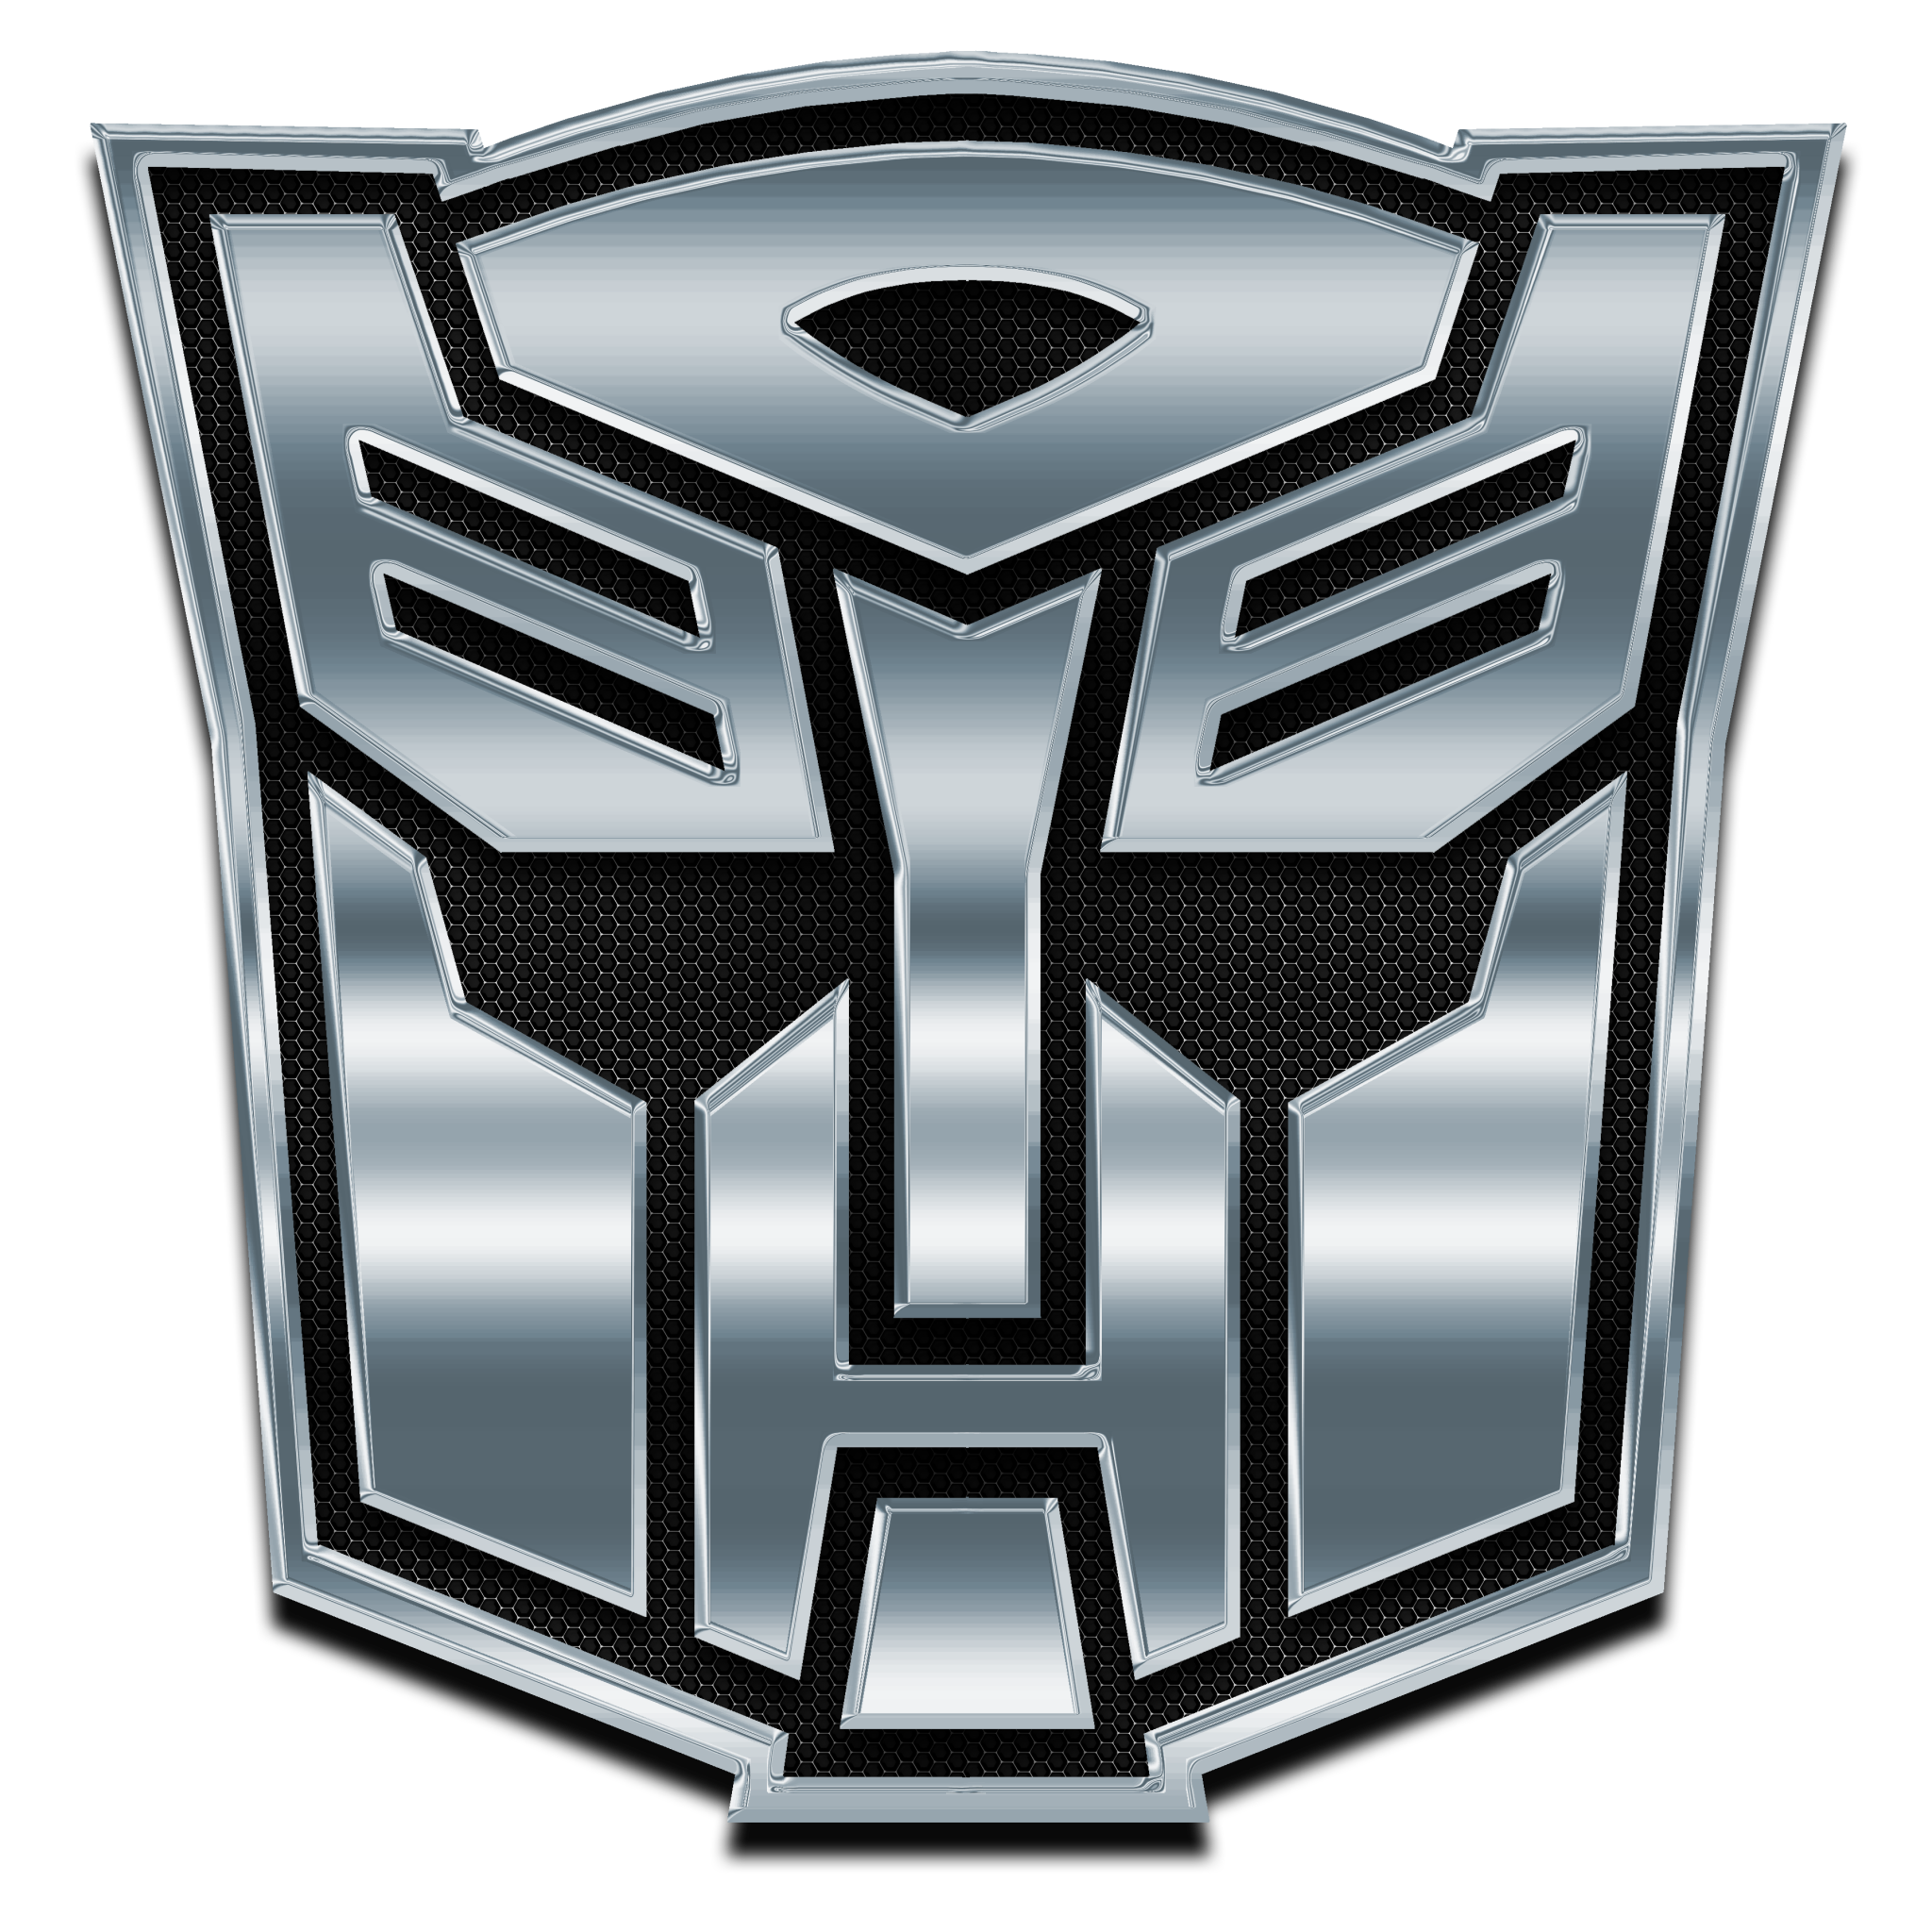 Logotipo da Transformers